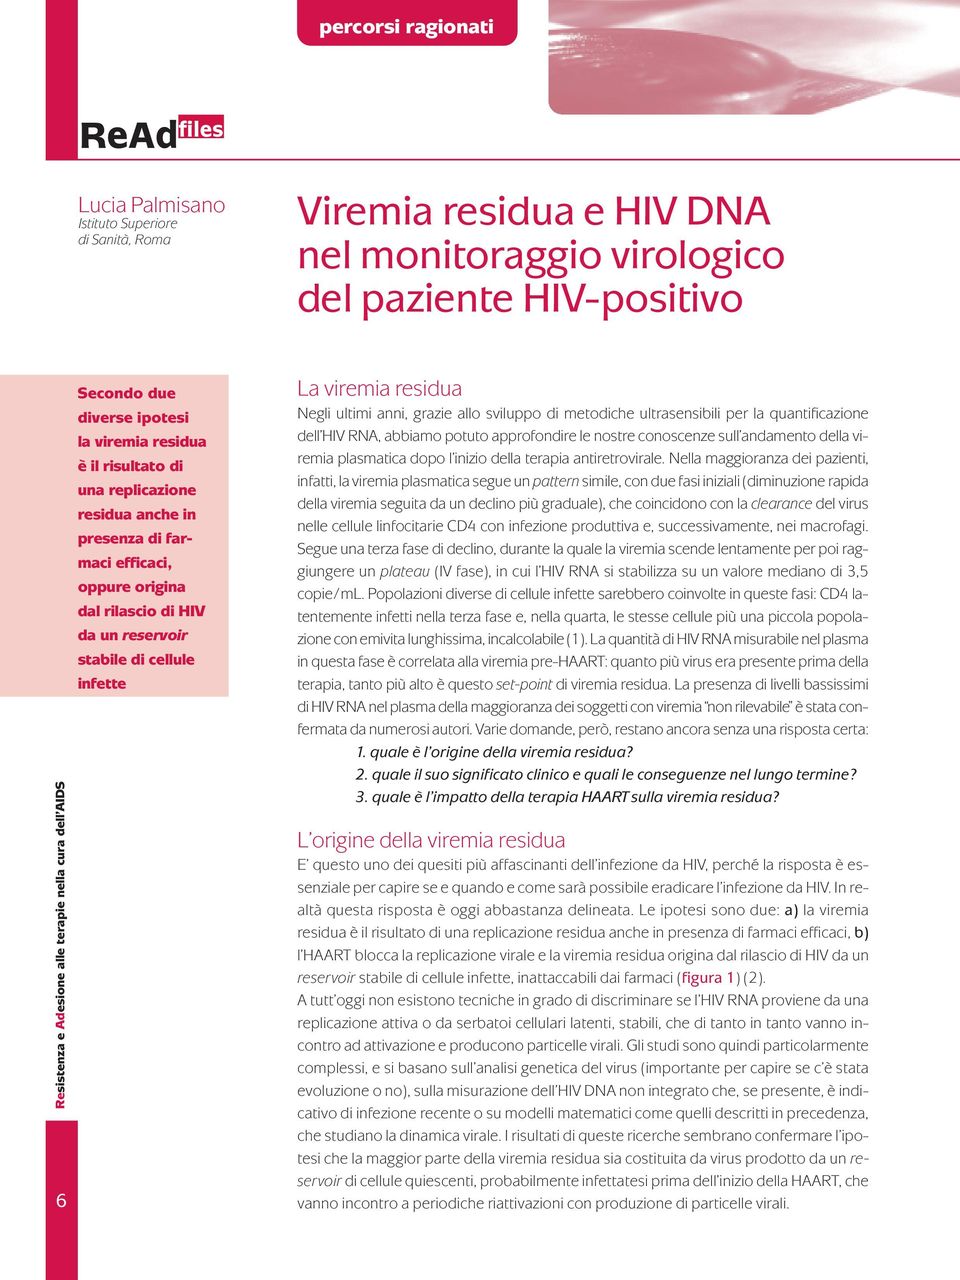 di cellule infette La viremia residua Negli ultimi anni, grazie allo sviluppo di metodiche ultrasensibili per la quantificazione dell HIV RNA, abbiamo potuto approfondire le nostre conoscenze sull